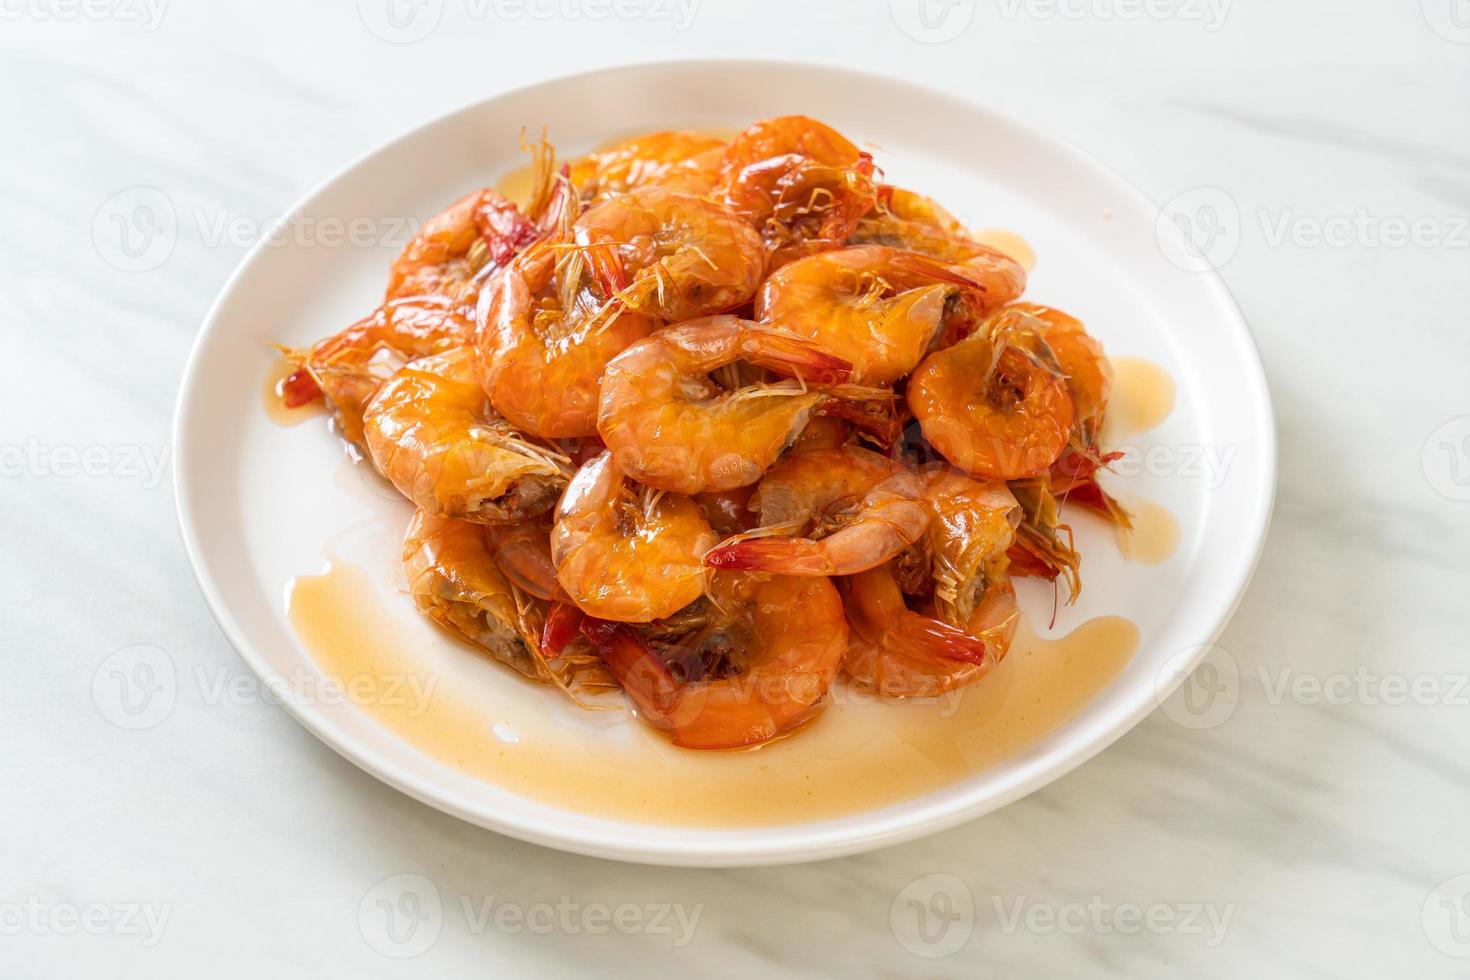 les crevettes douces sont un plat thaï qui cuisine avec de la sauce de poisson et du sucre photo